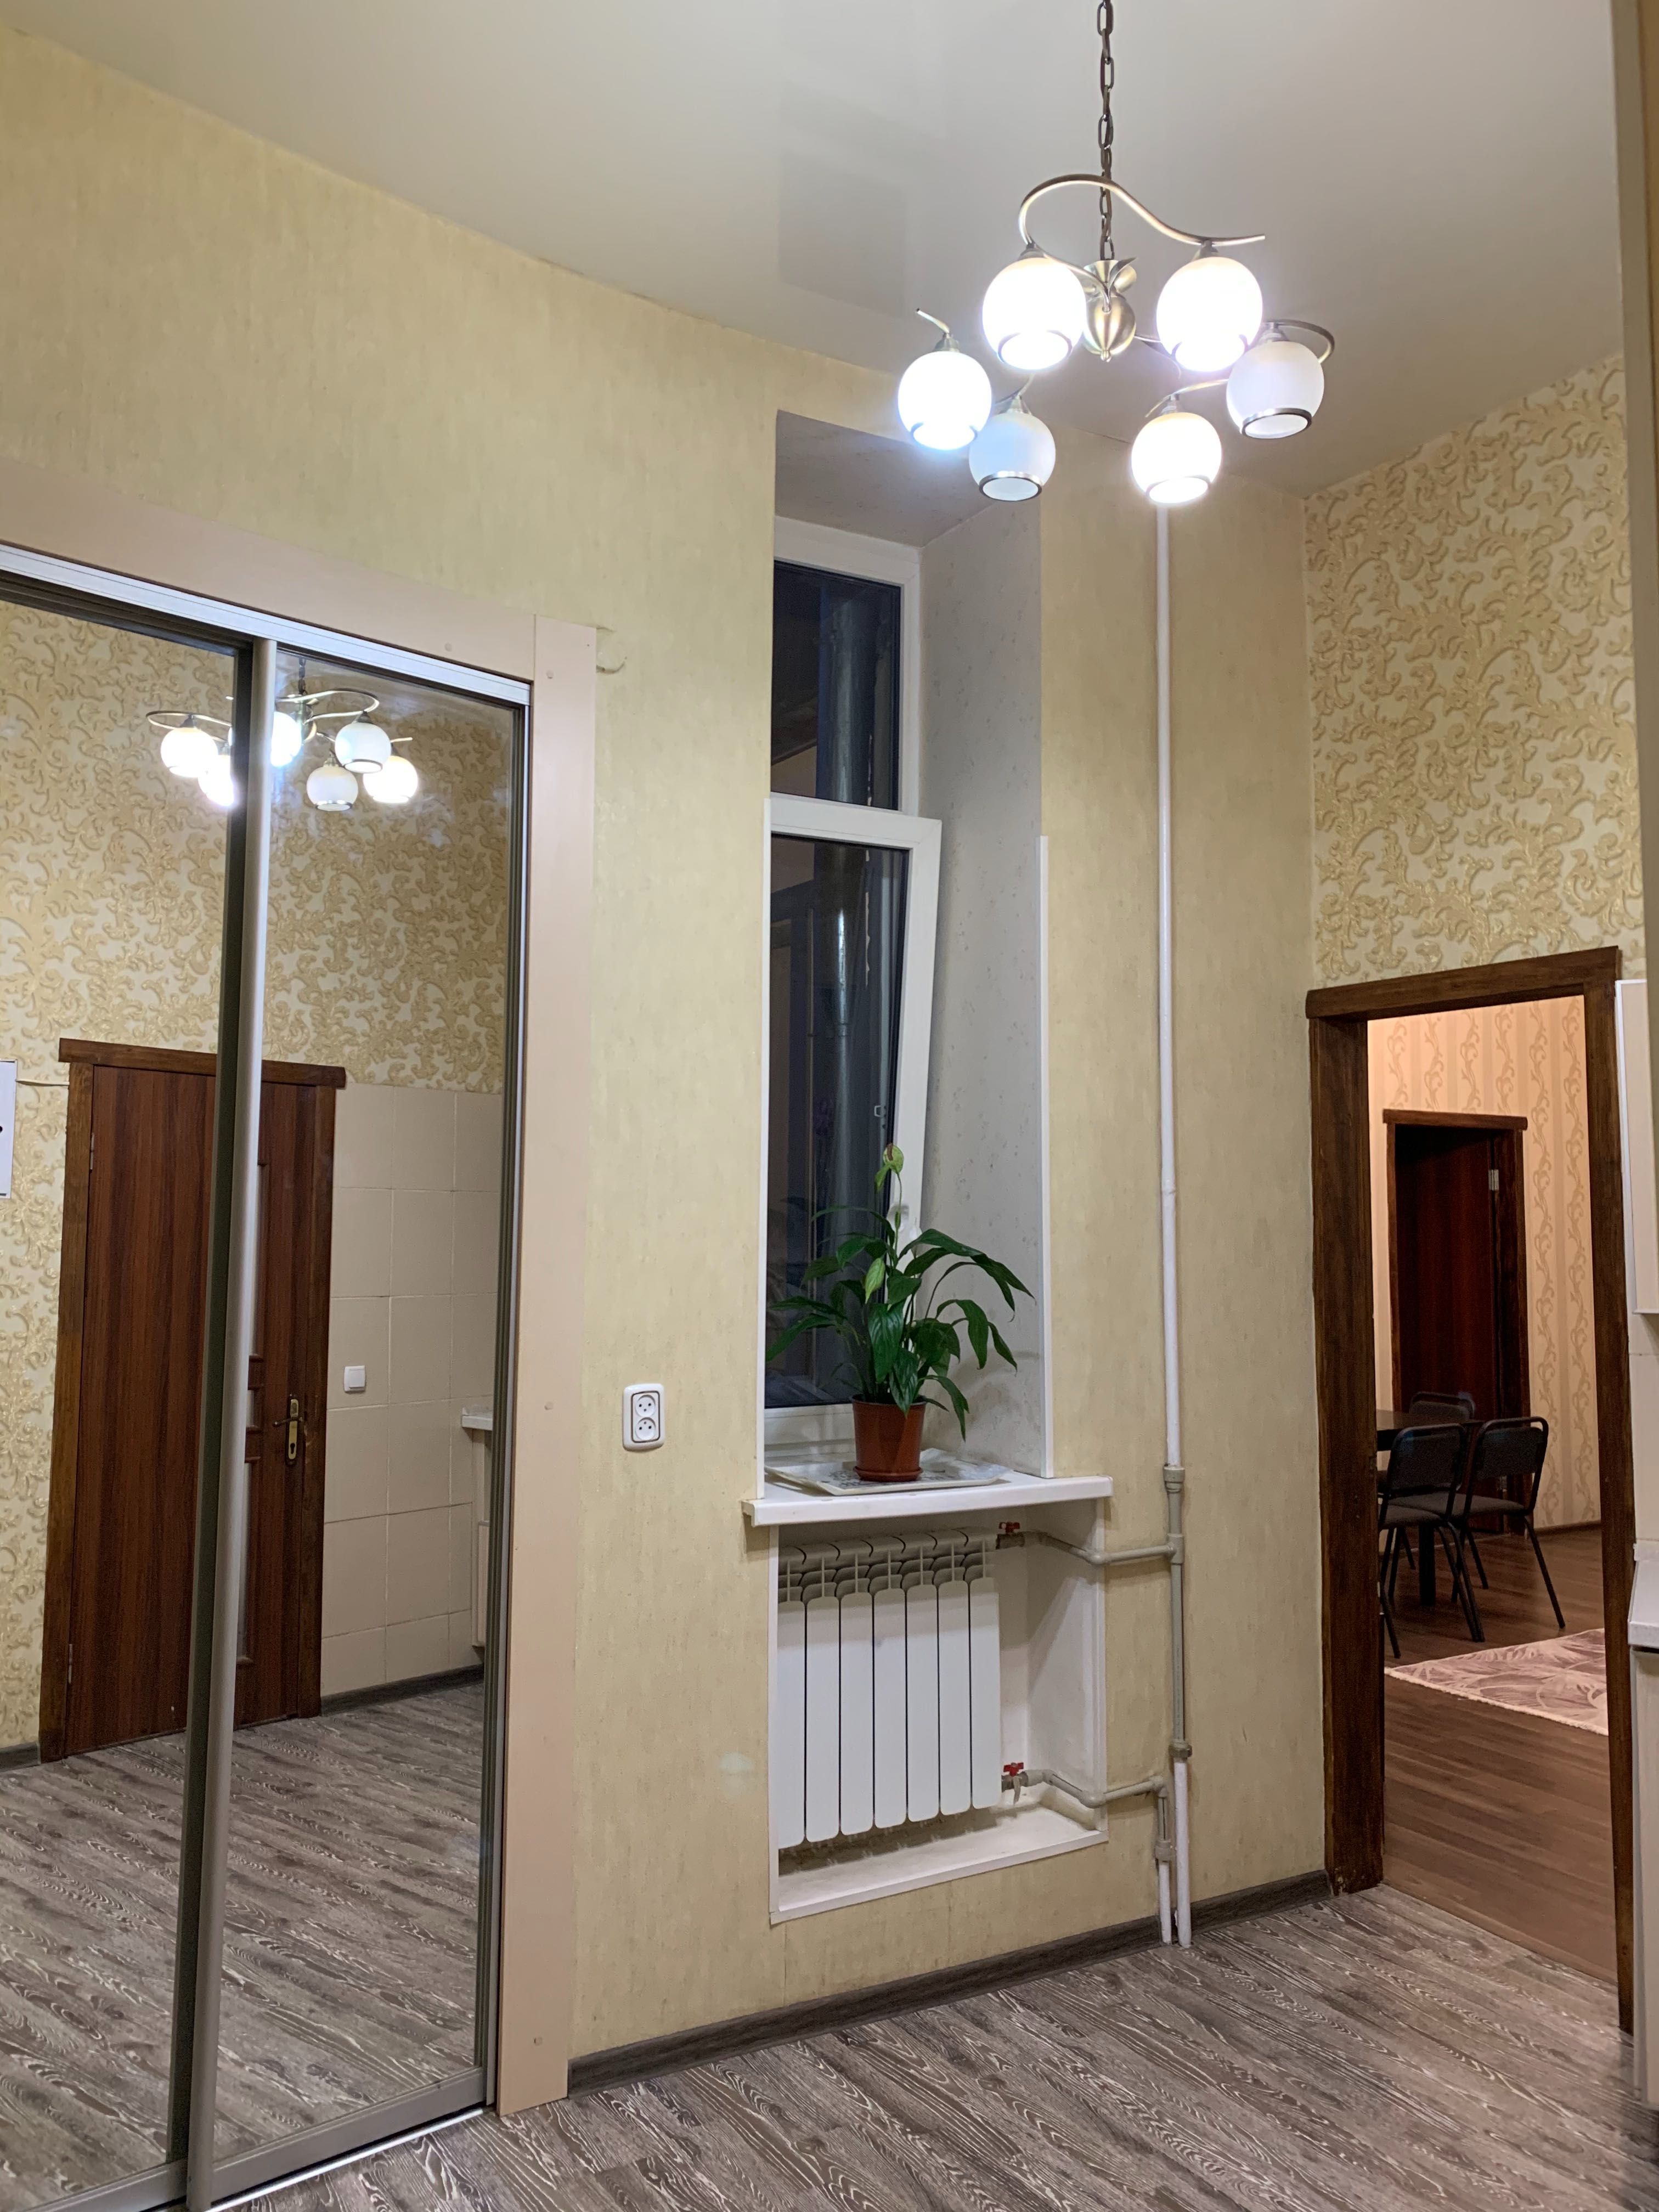 Аренда 3-х комнатной квартиры в Центре по улице Чернышевская